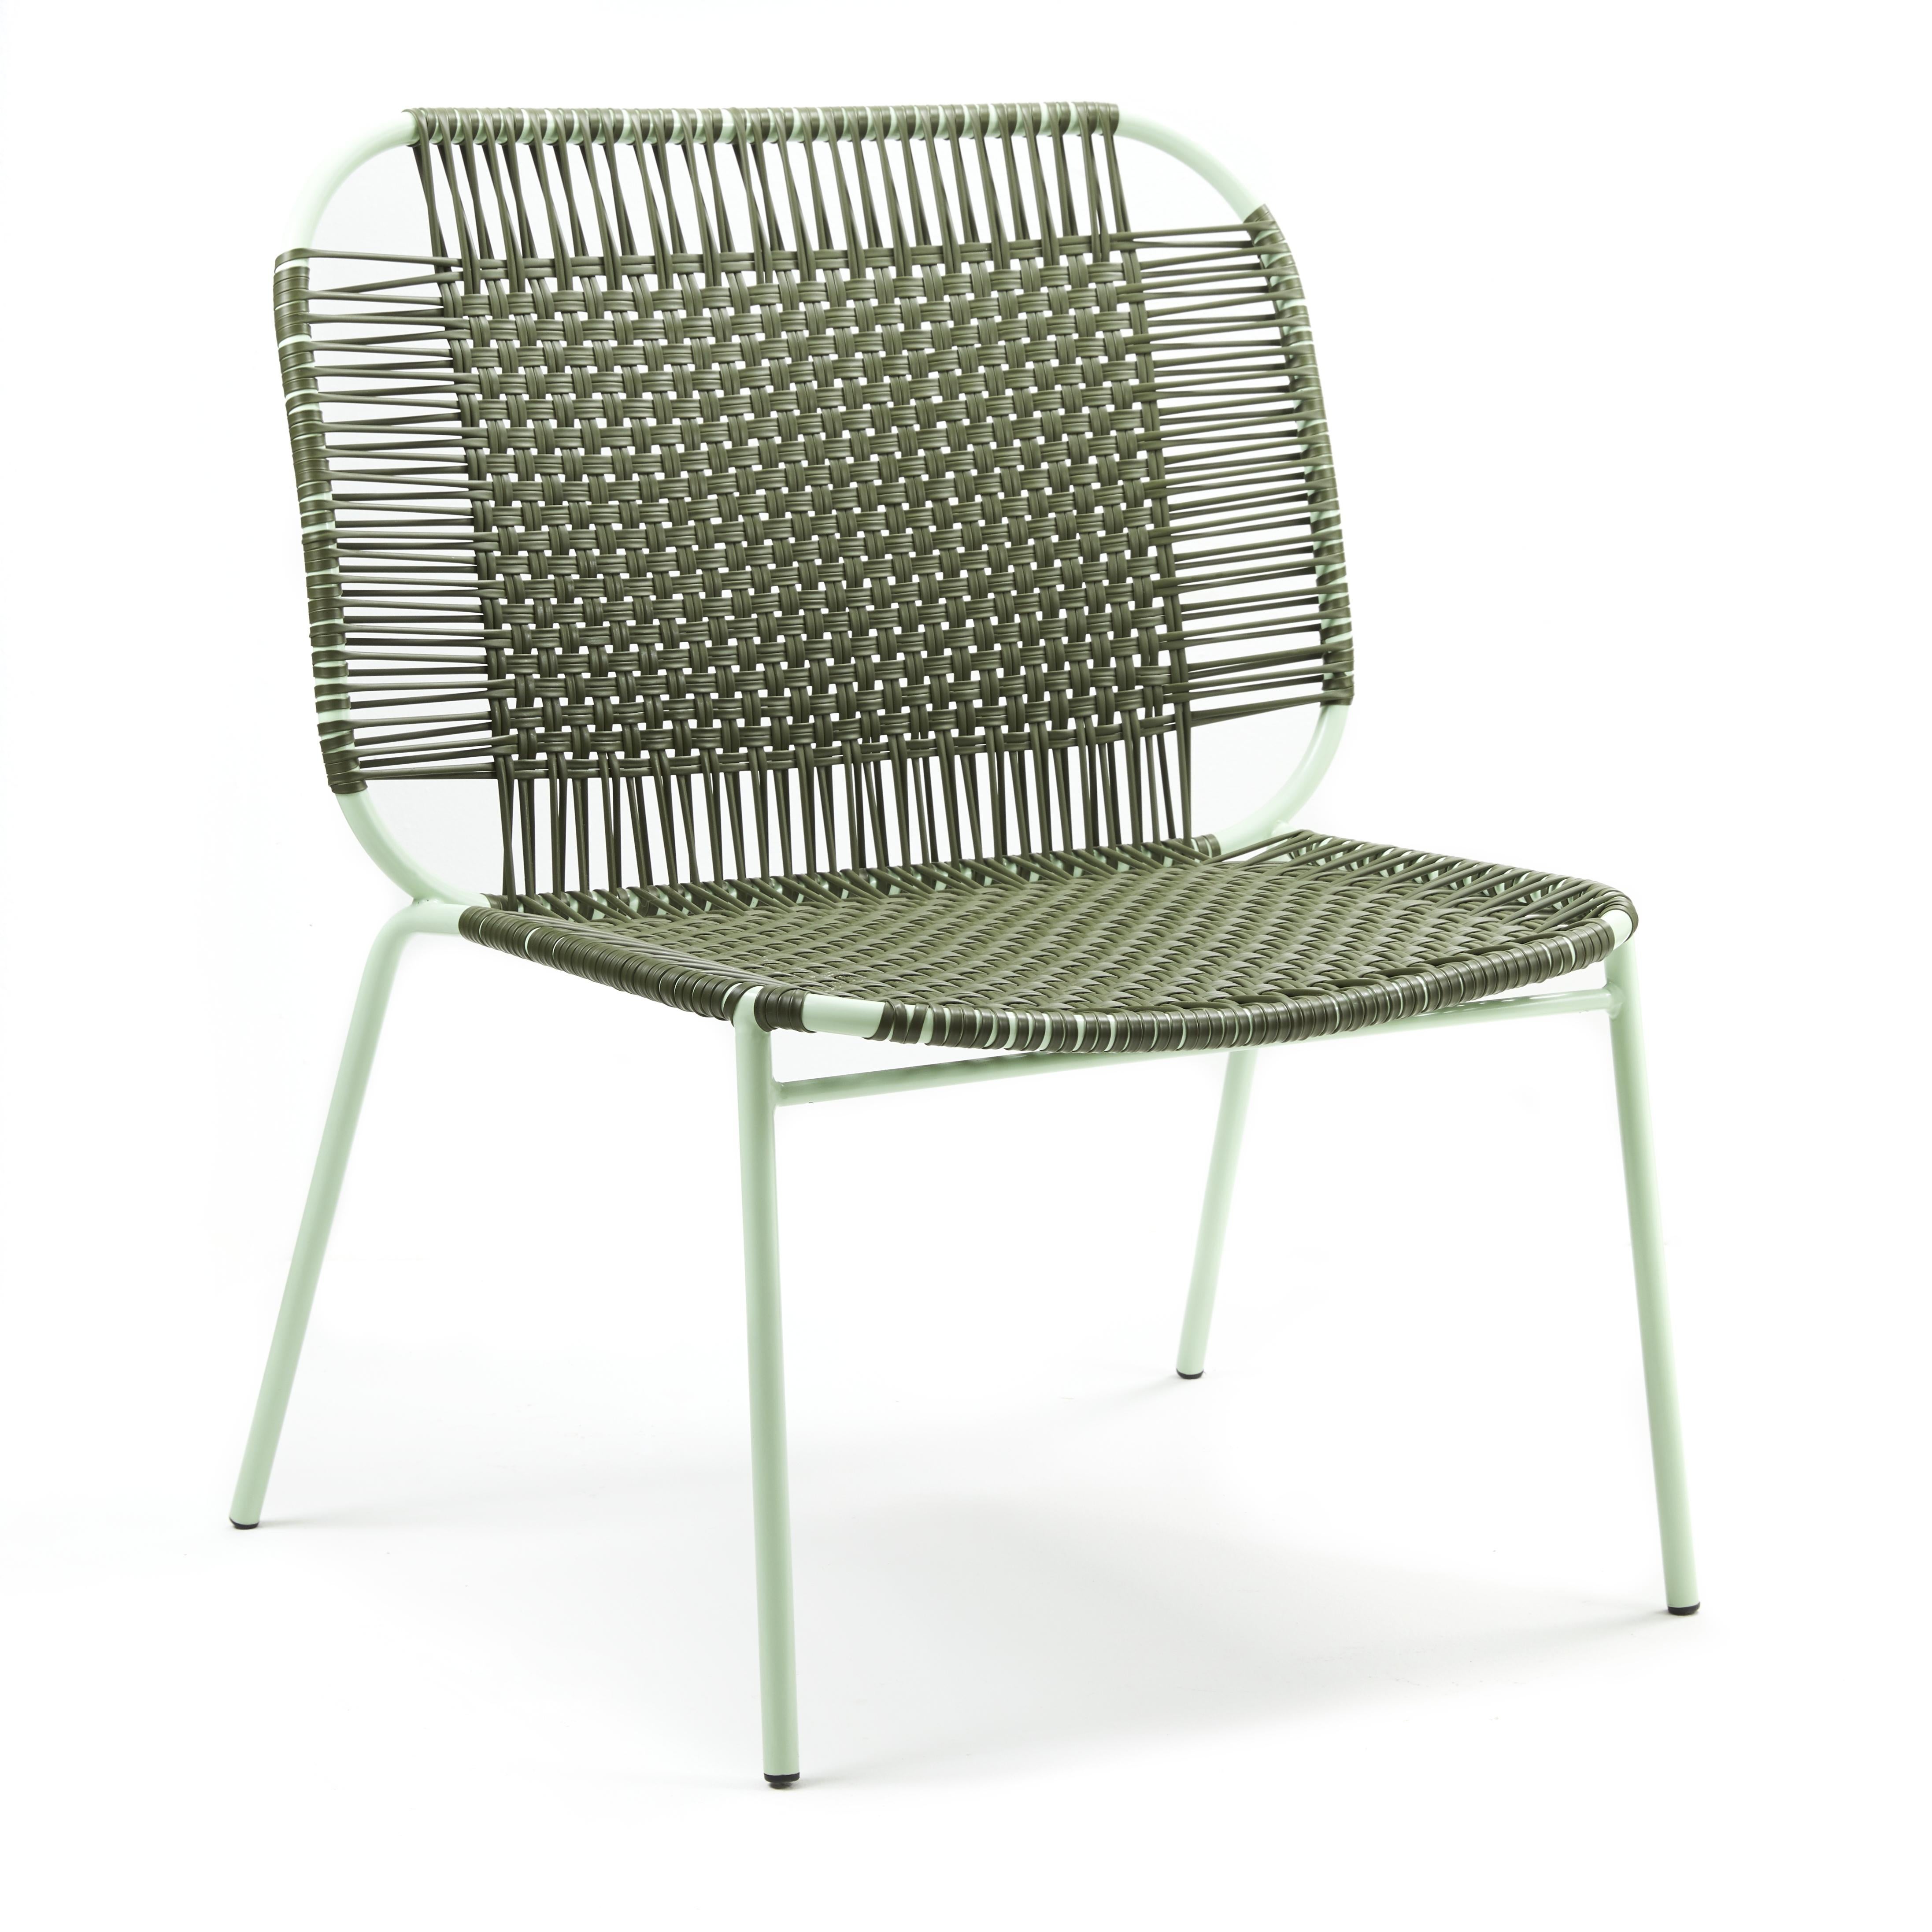 2er-Set olivgrüner Cielo Lounge-Liegestuhl von Sebastian Herkner
MATERIALIEN: Verzinktes und pulverbeschichtetes Stahlrohr. PVC-Schnüre werden aus recyceltem Kunststoff hergestellt.
Technik: Hergestellt aus recyceltem Kunststoff und gewebt von